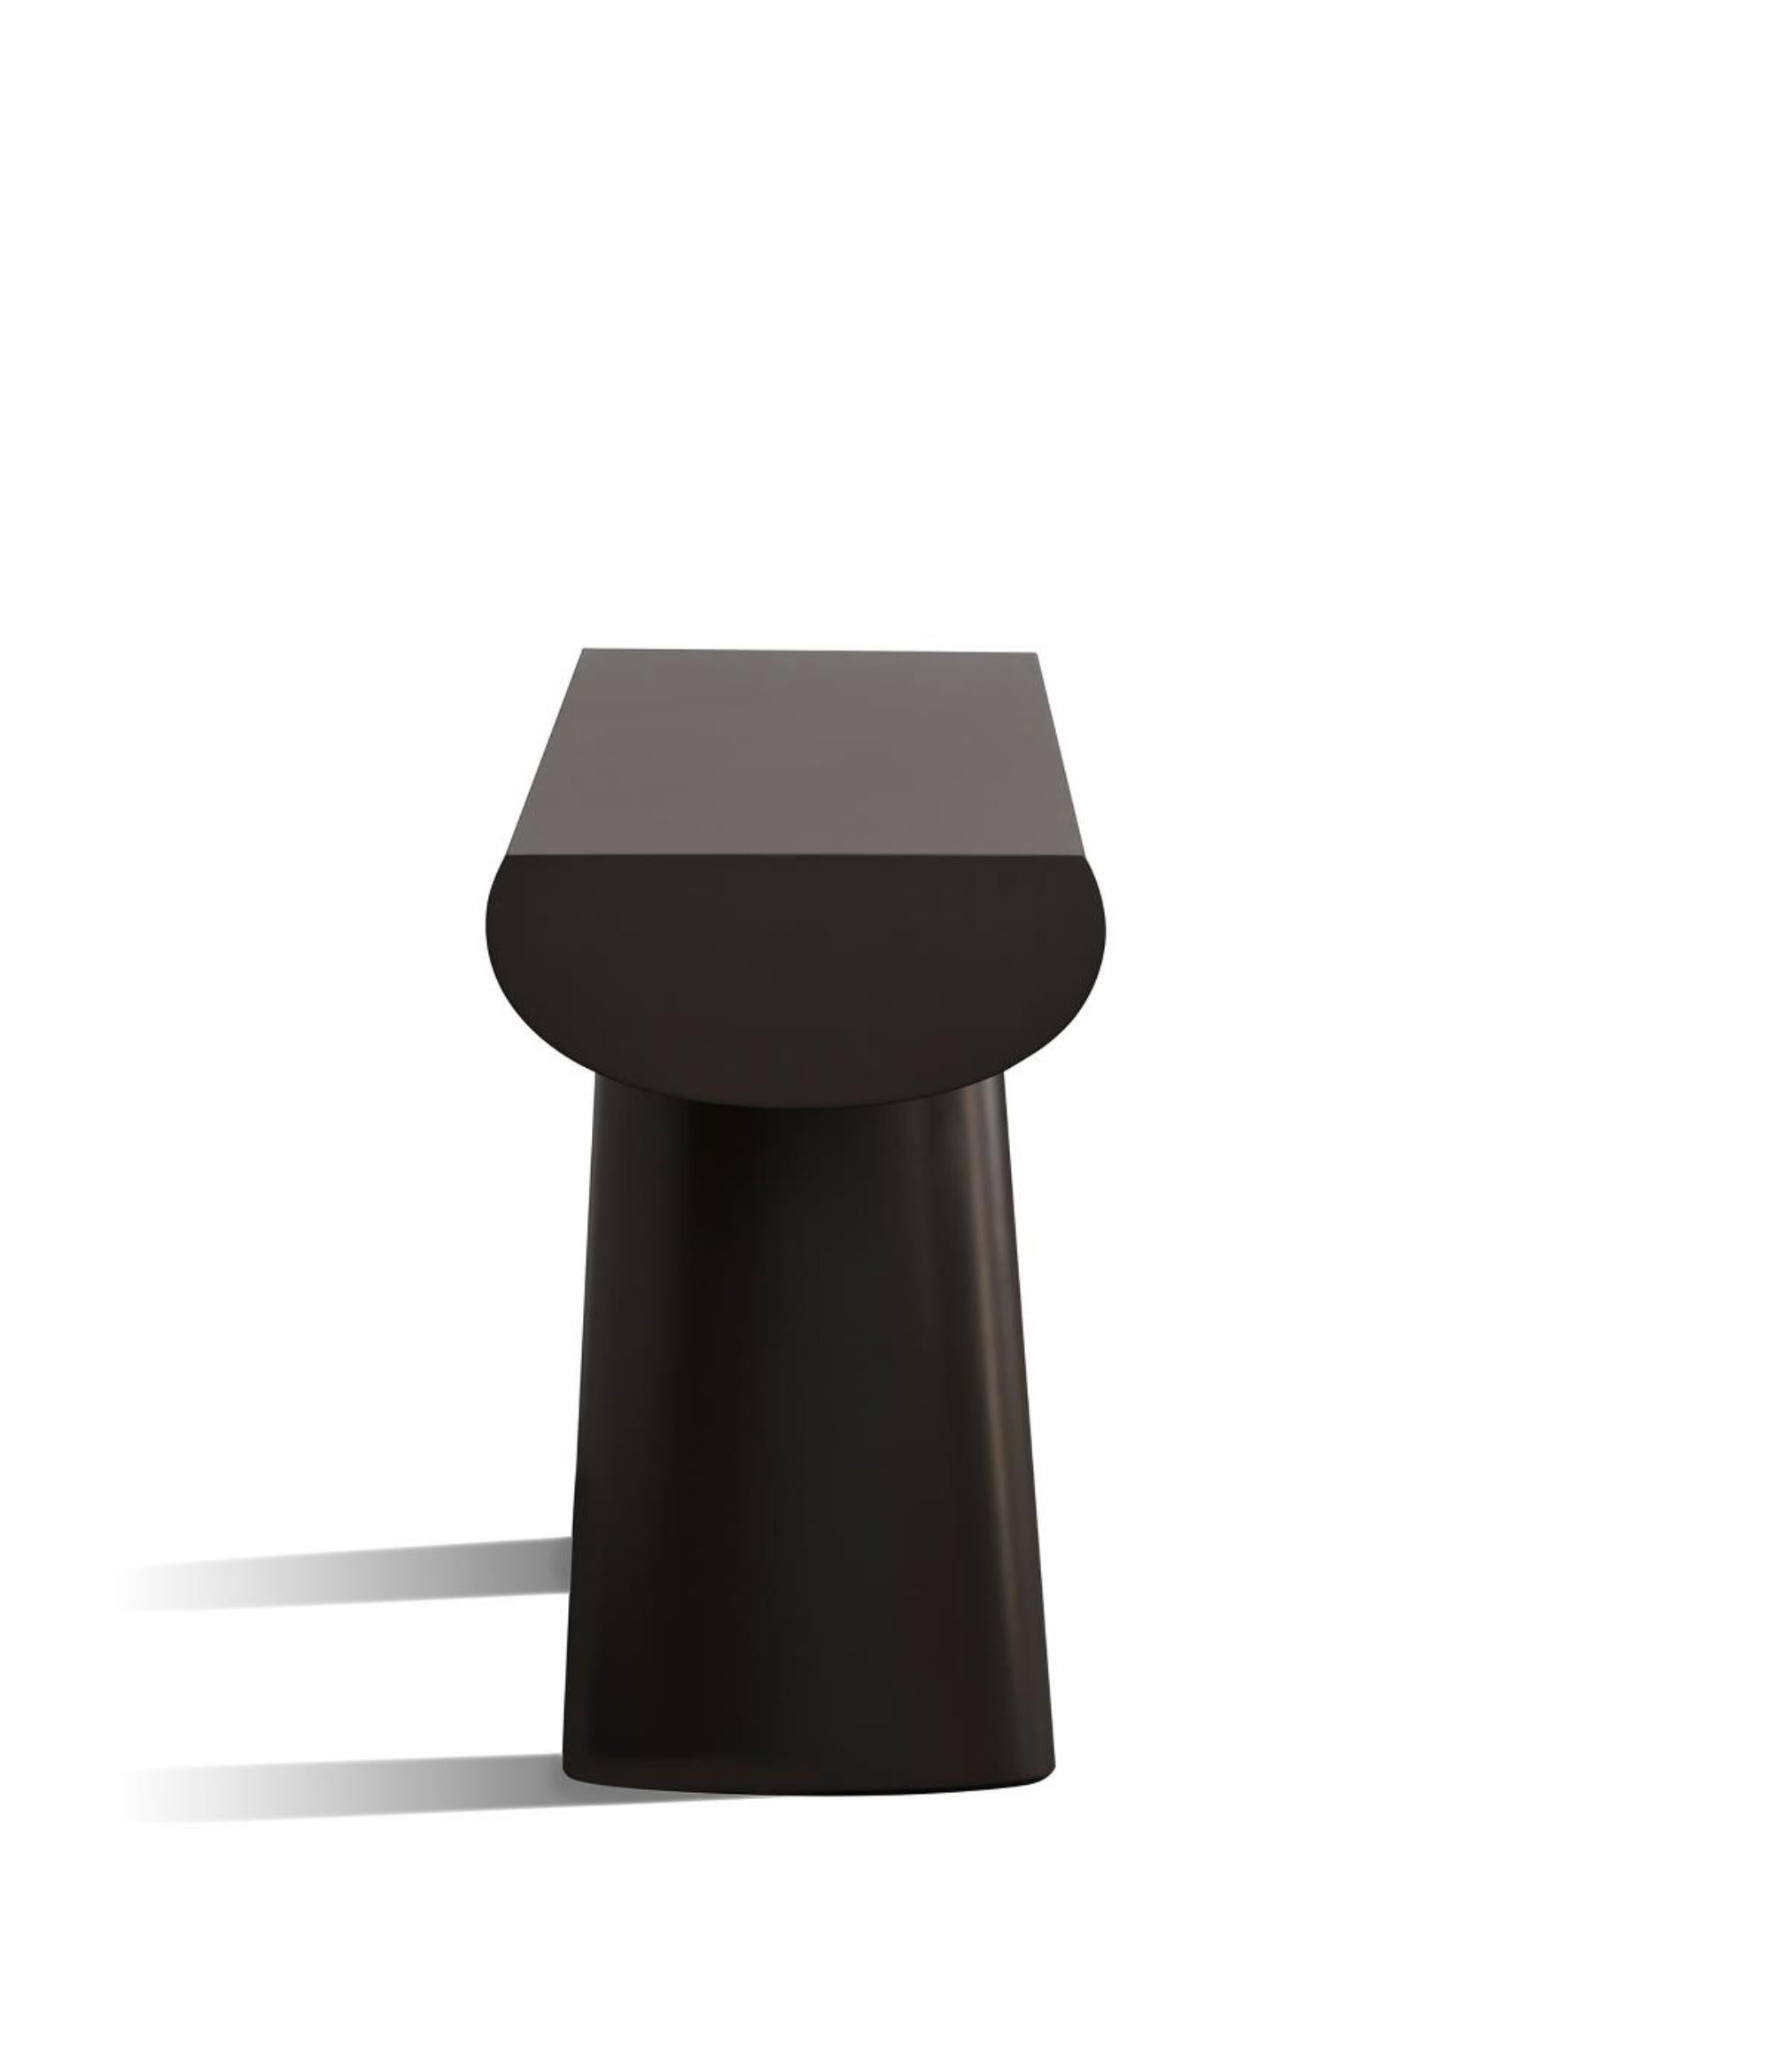 Table console conçue par Aldo Bakker en 2017. 

Matériau :
HI-MACS

Couleur :
Mocca

Finition :
Laqué mat et soyeux.